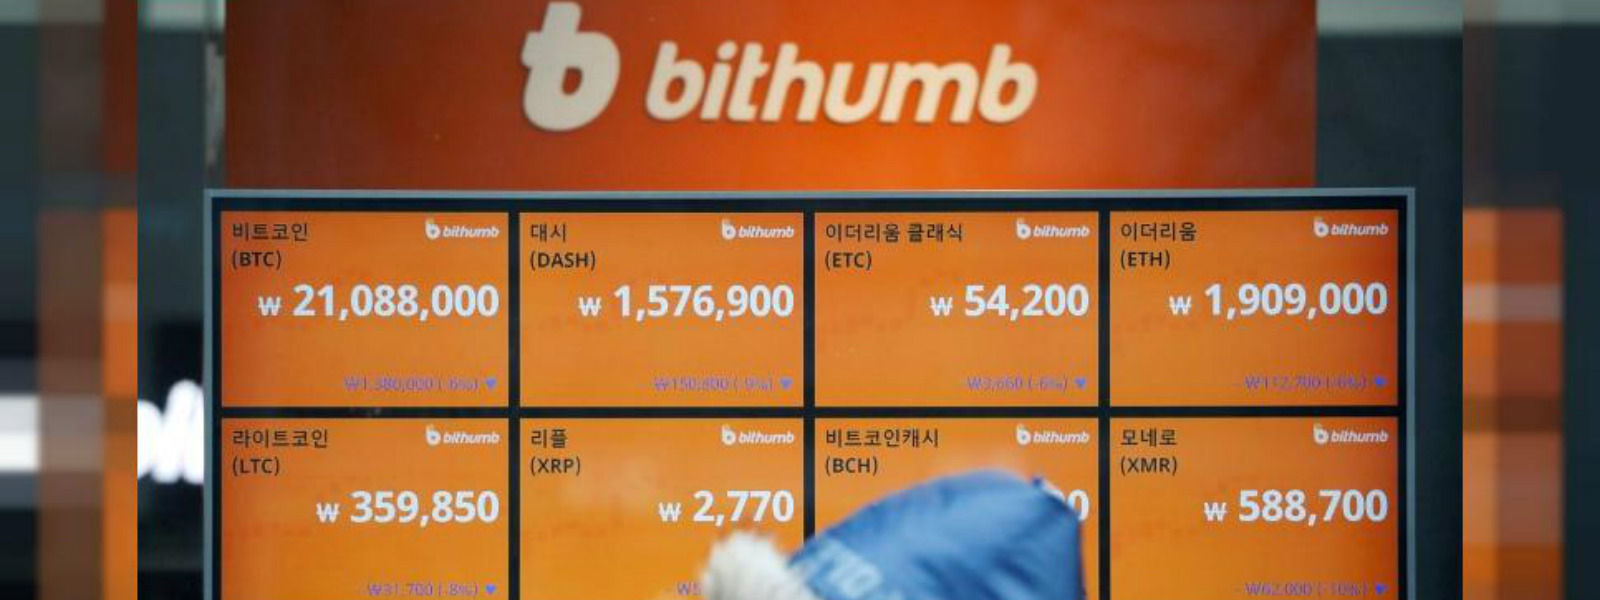 S Korea cryptocurrency exchange Bithumb hacked